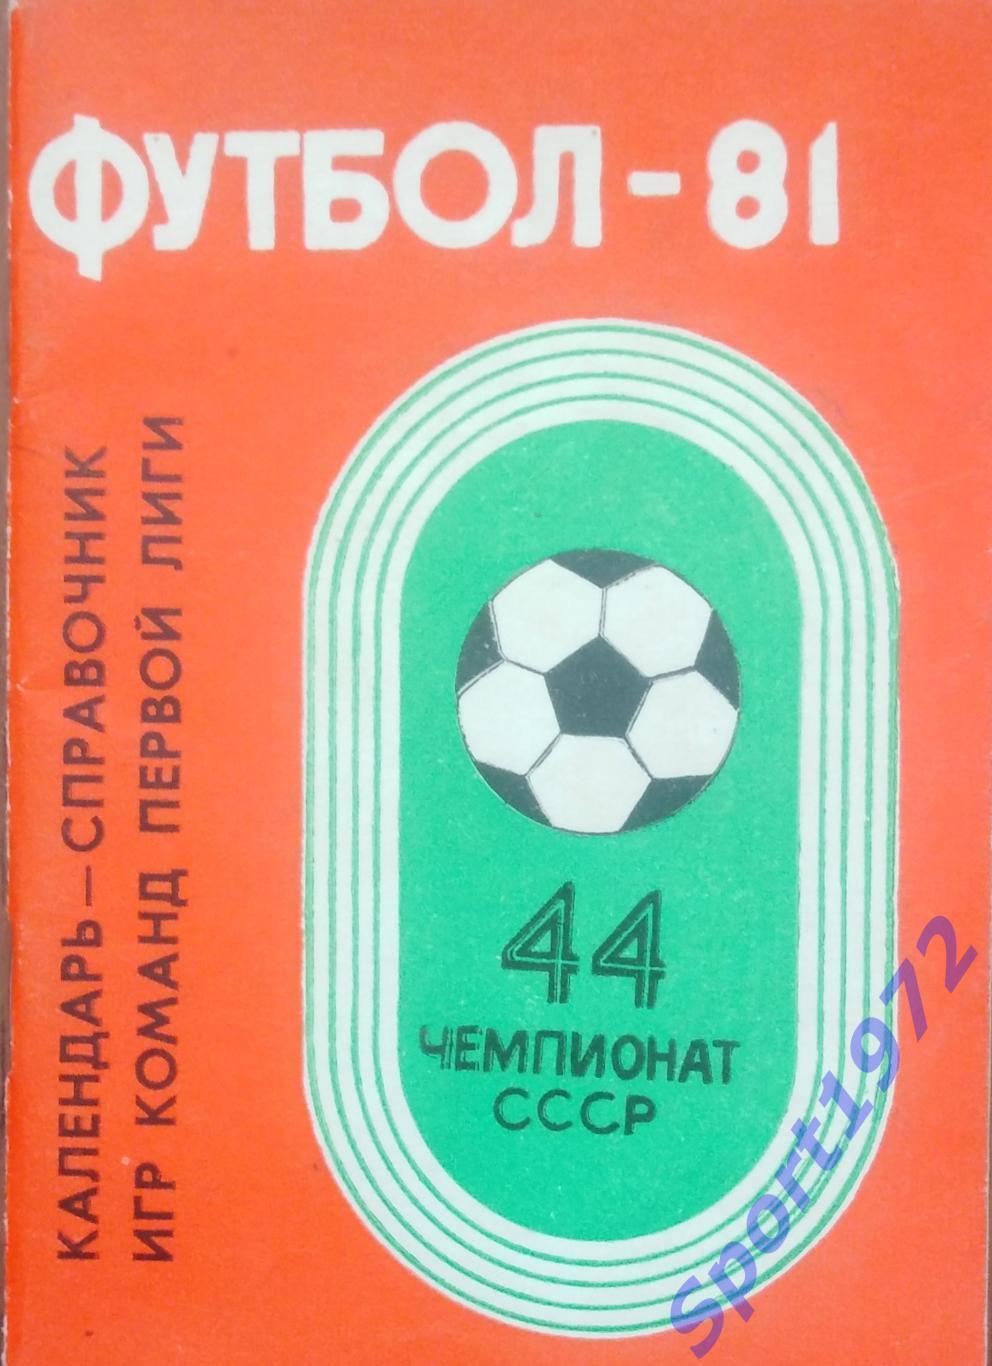 Календарь-справочник. Футбол - 81. Кемерово. 1981. 64 стр.